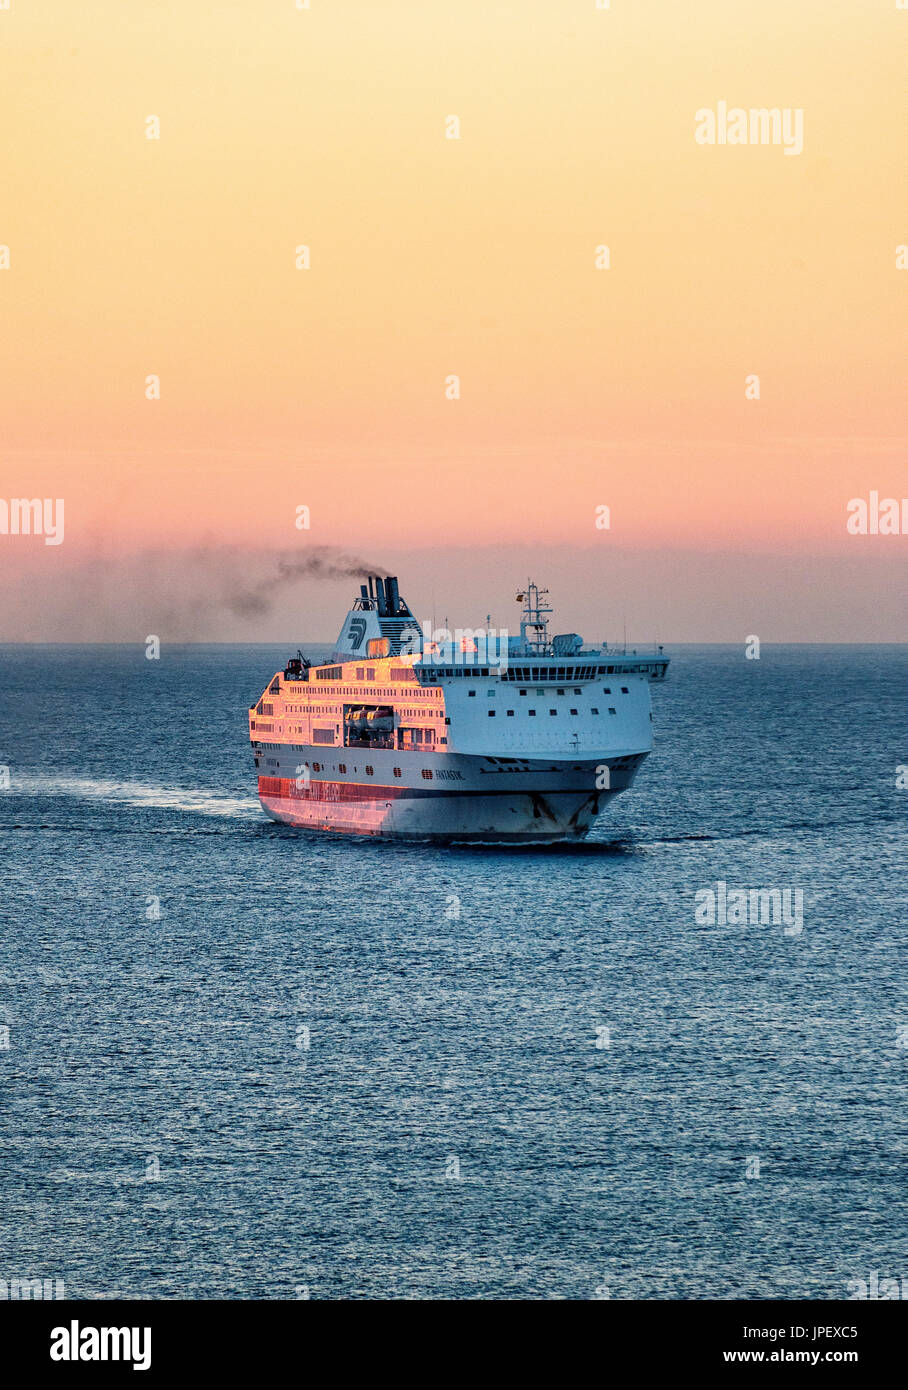 Grandi navi traghetto veloci in mare sul Genoa-Barcelona-Tangeri linea Foto  stock - Alamy